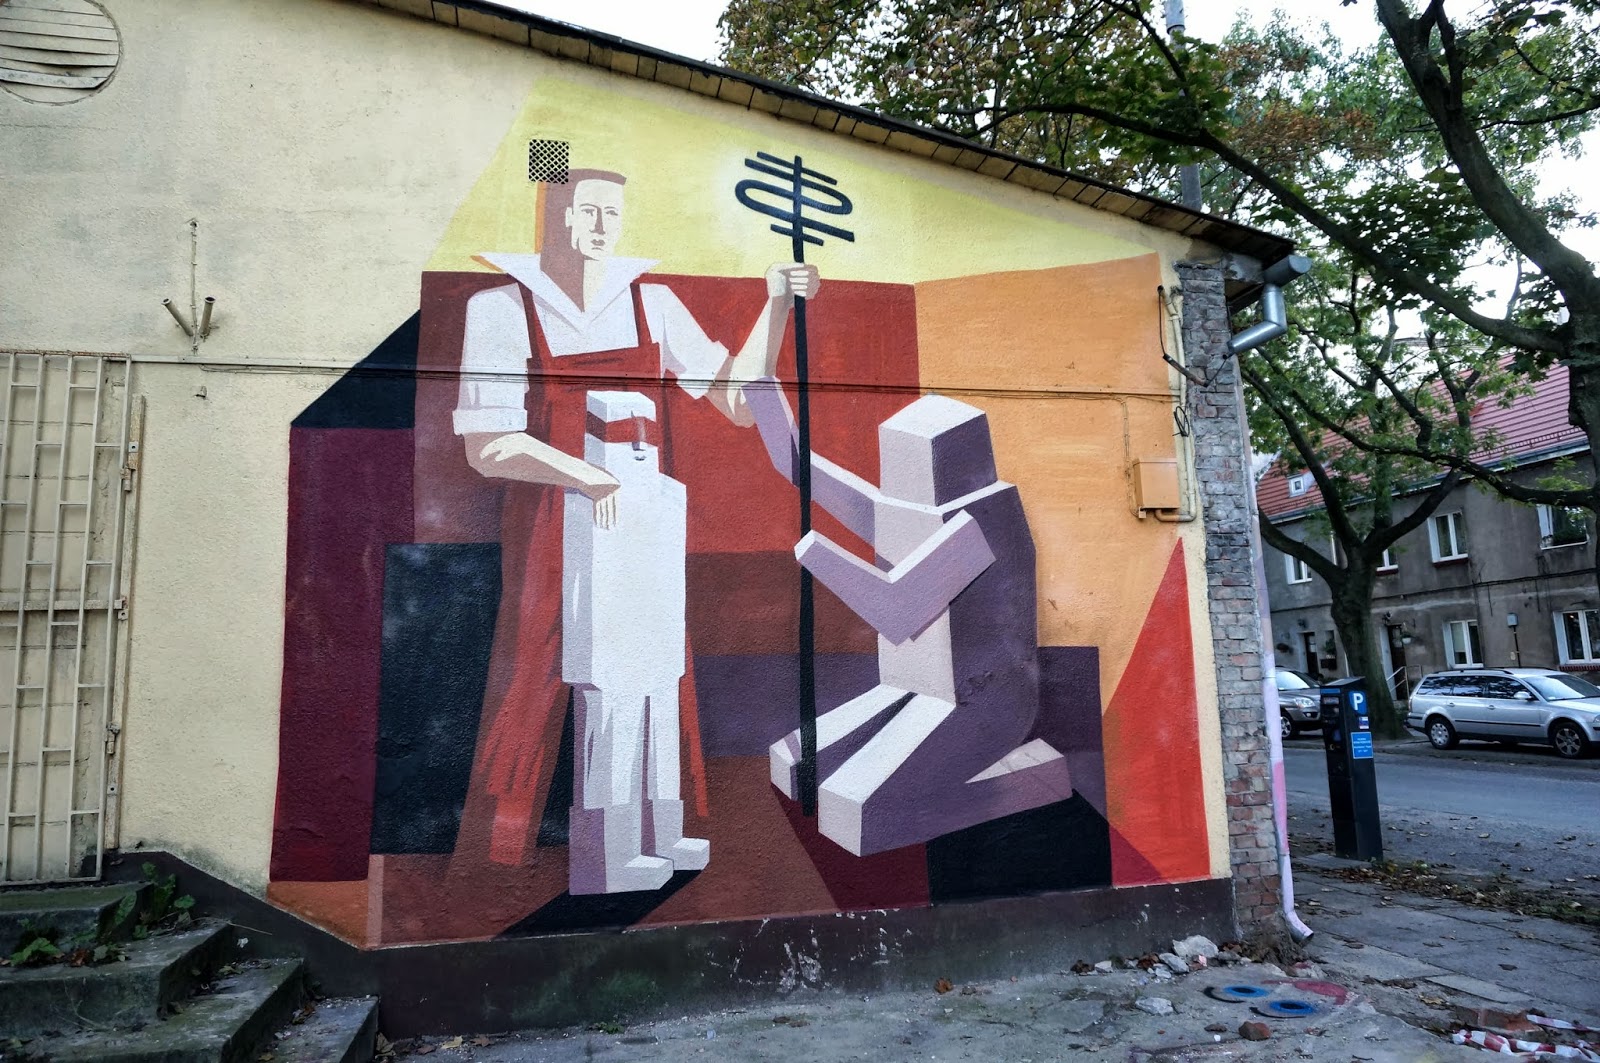 Jacyndol New Street Art Pieces – Miechucino & Gdynia, Poland ...